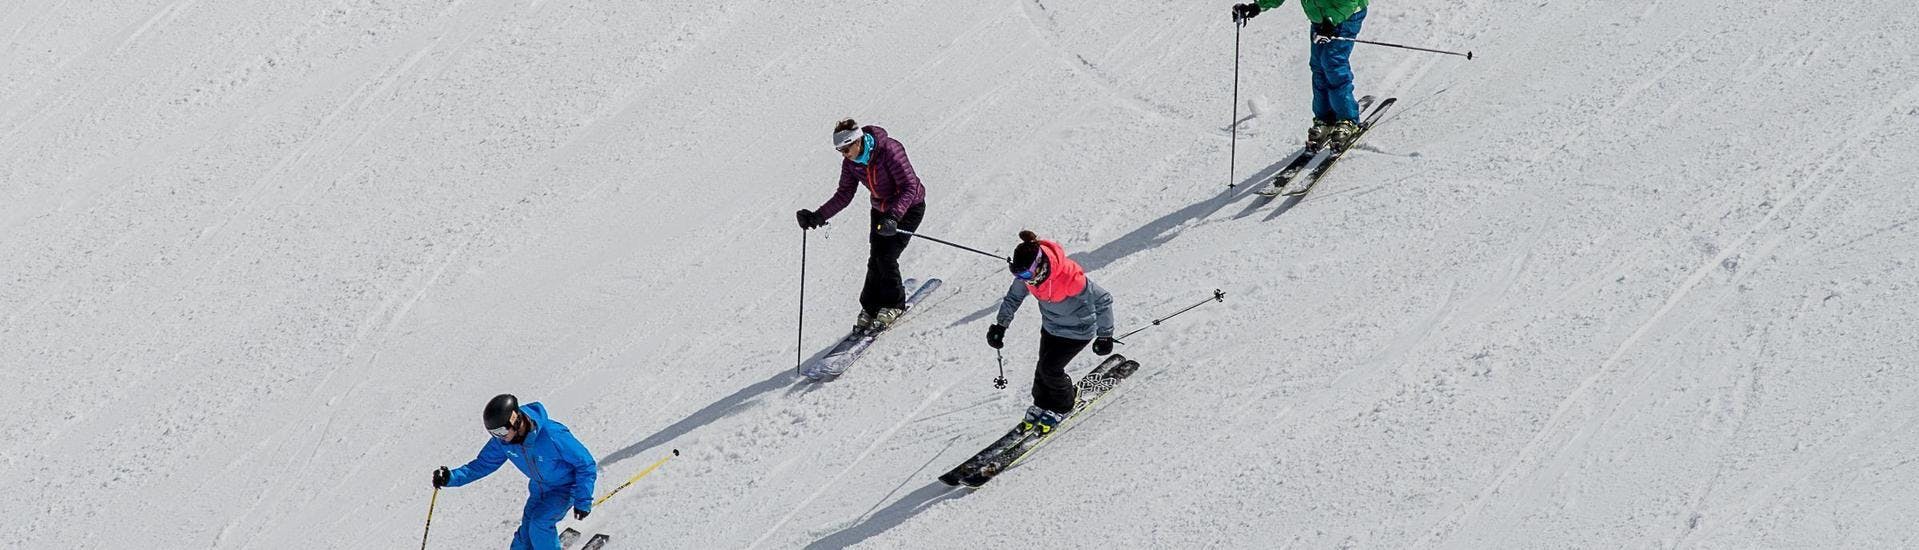 Privé skilessen voor volwassenen van alle niveaus - namiddag.